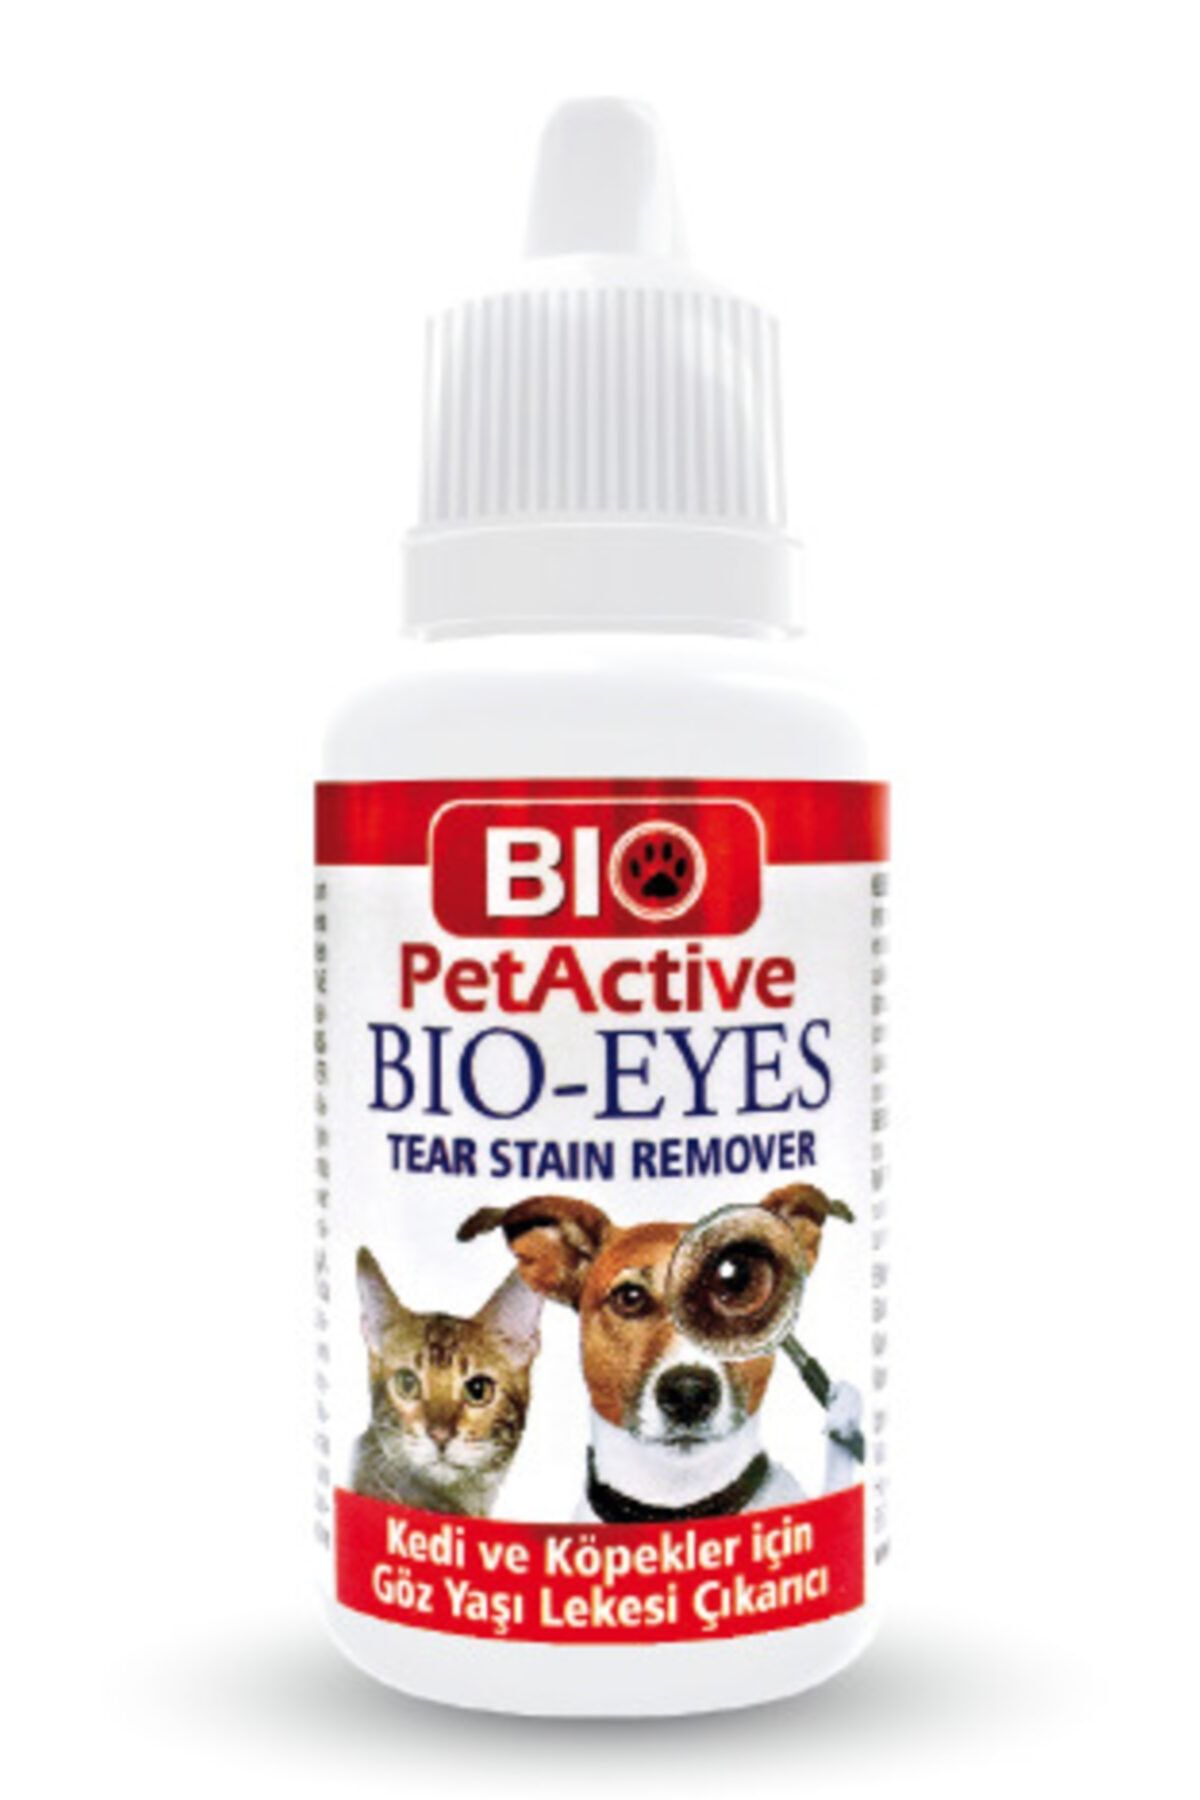 Bio PetActive Bıo-eyes | Kedi Ve Köpekler Için Gözyaşı Lekesi Çıkarıcı 50 Ml.